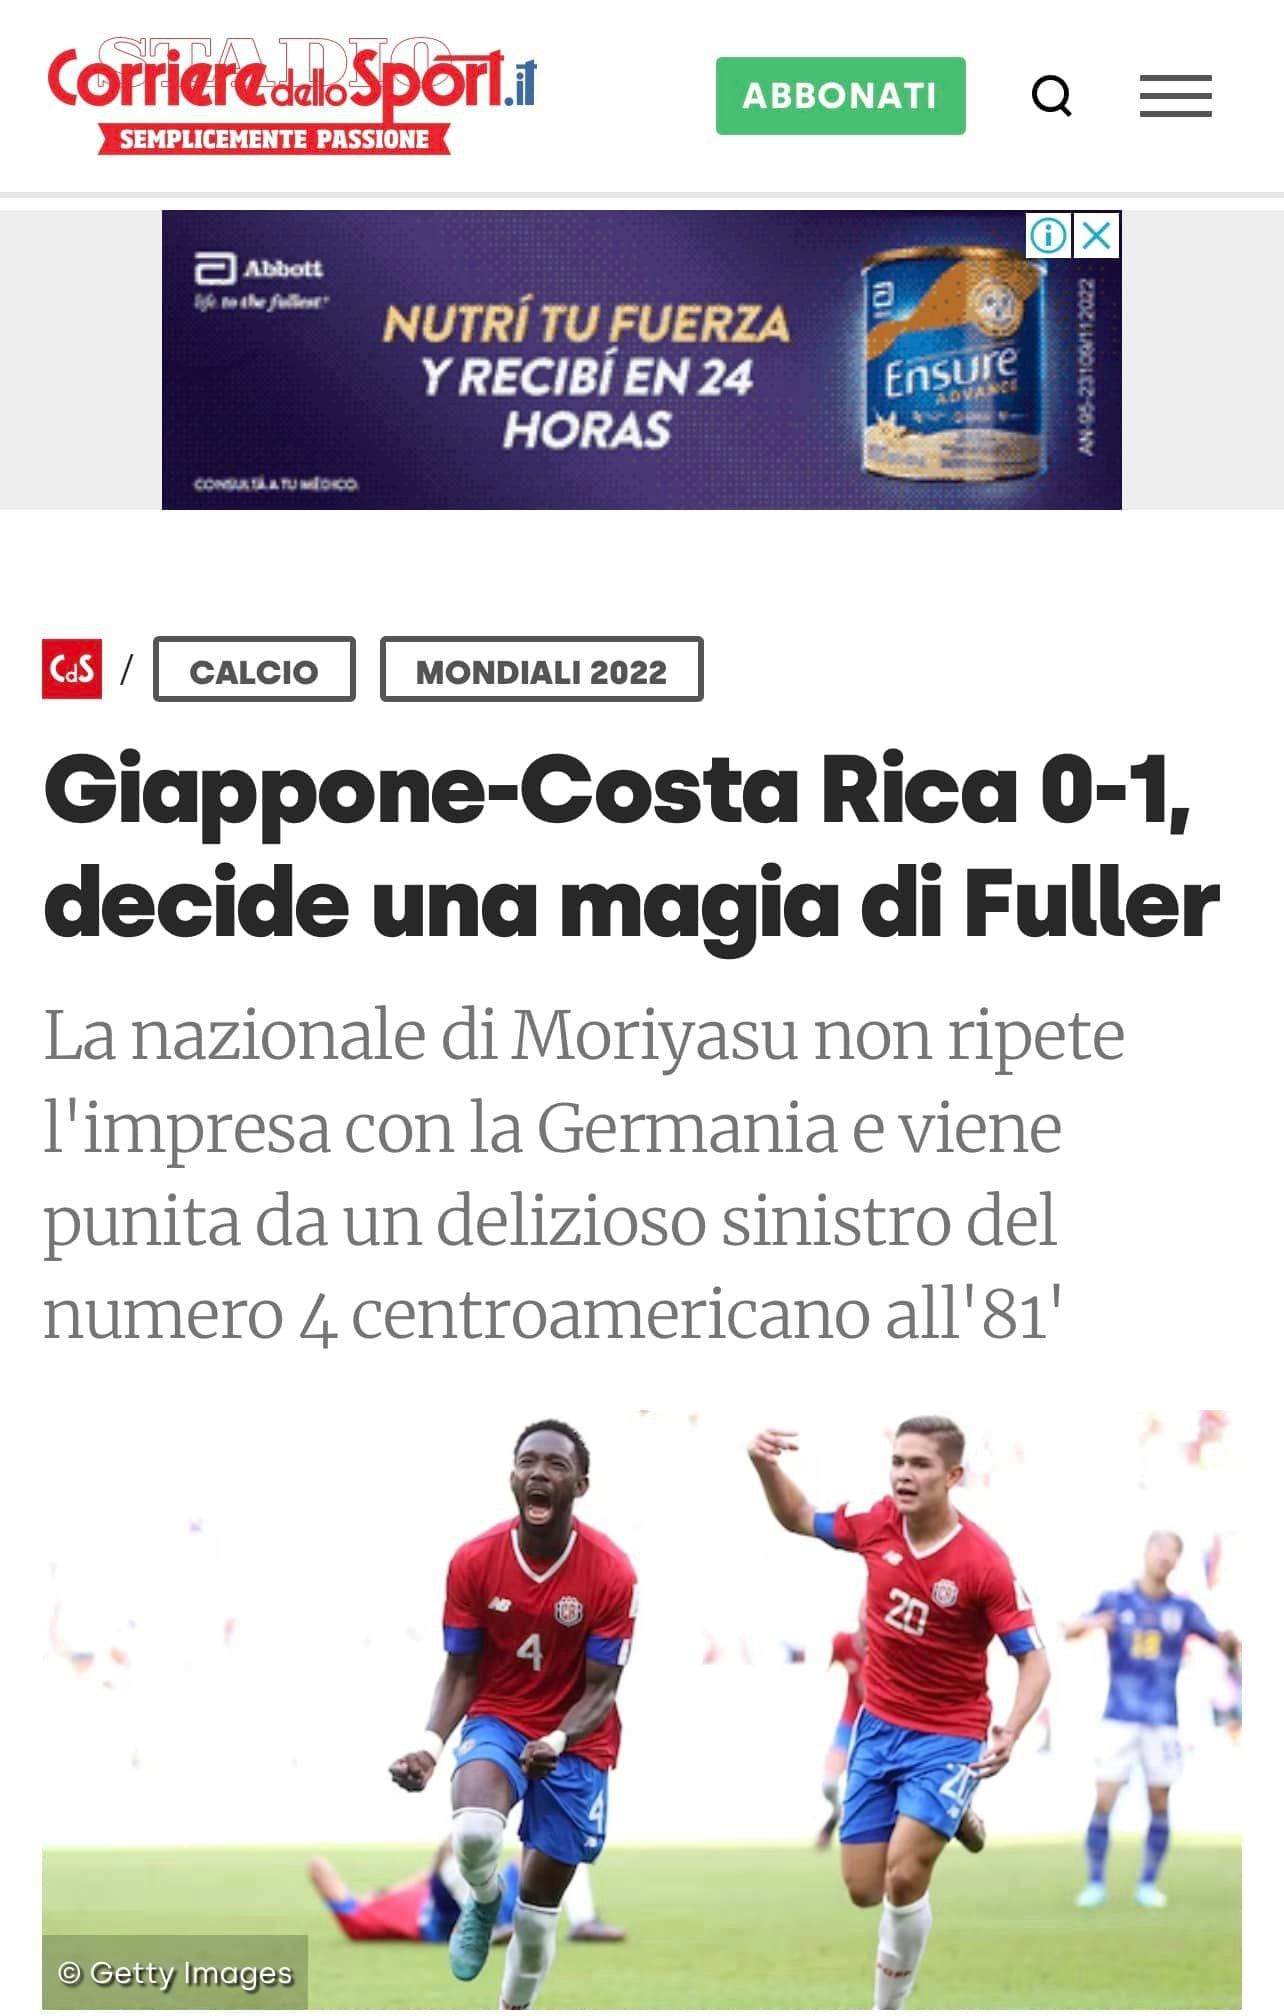 El periódico italiano Corriere dello Sport indicó que Keysher Fuller sacó su magia para darle el triunfo a Costa Rica. Tomado de Facebook